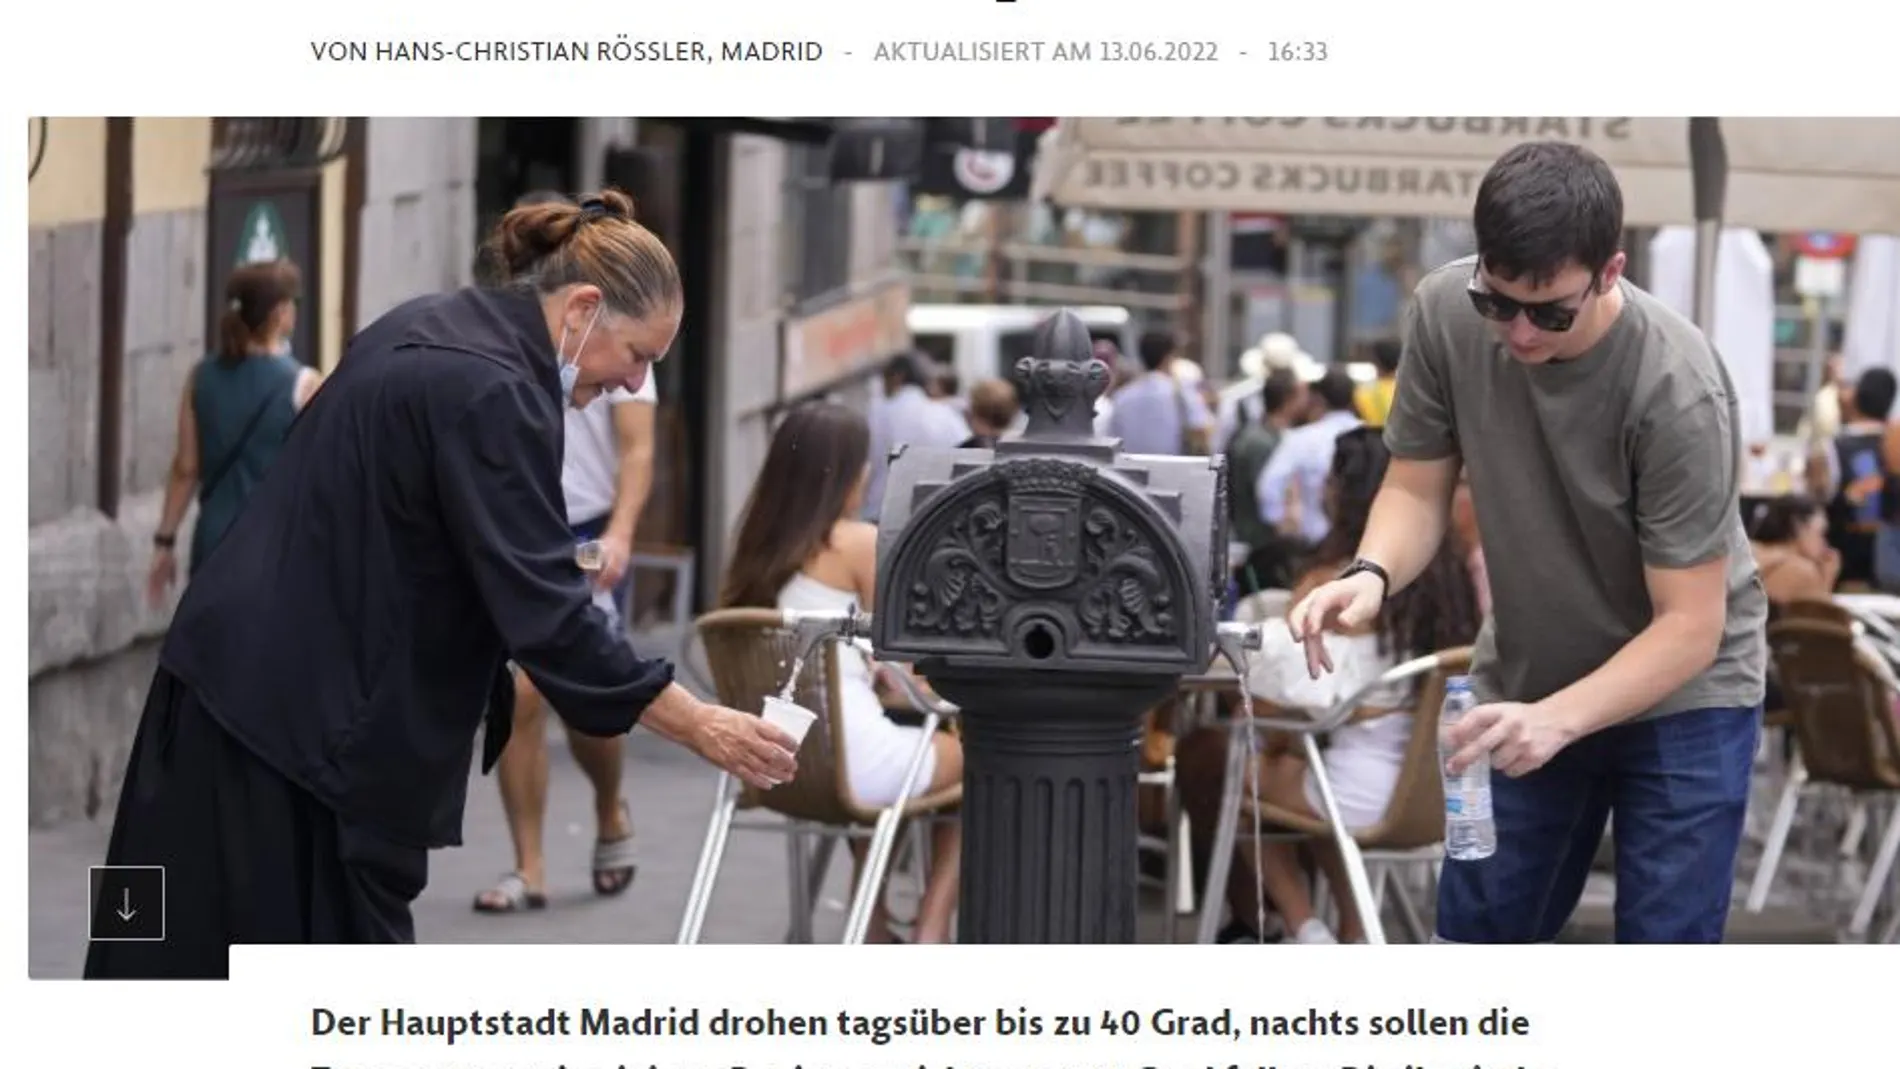 Información del periódico alemán Frankfurter Allegemine sobre la ola de calor en España